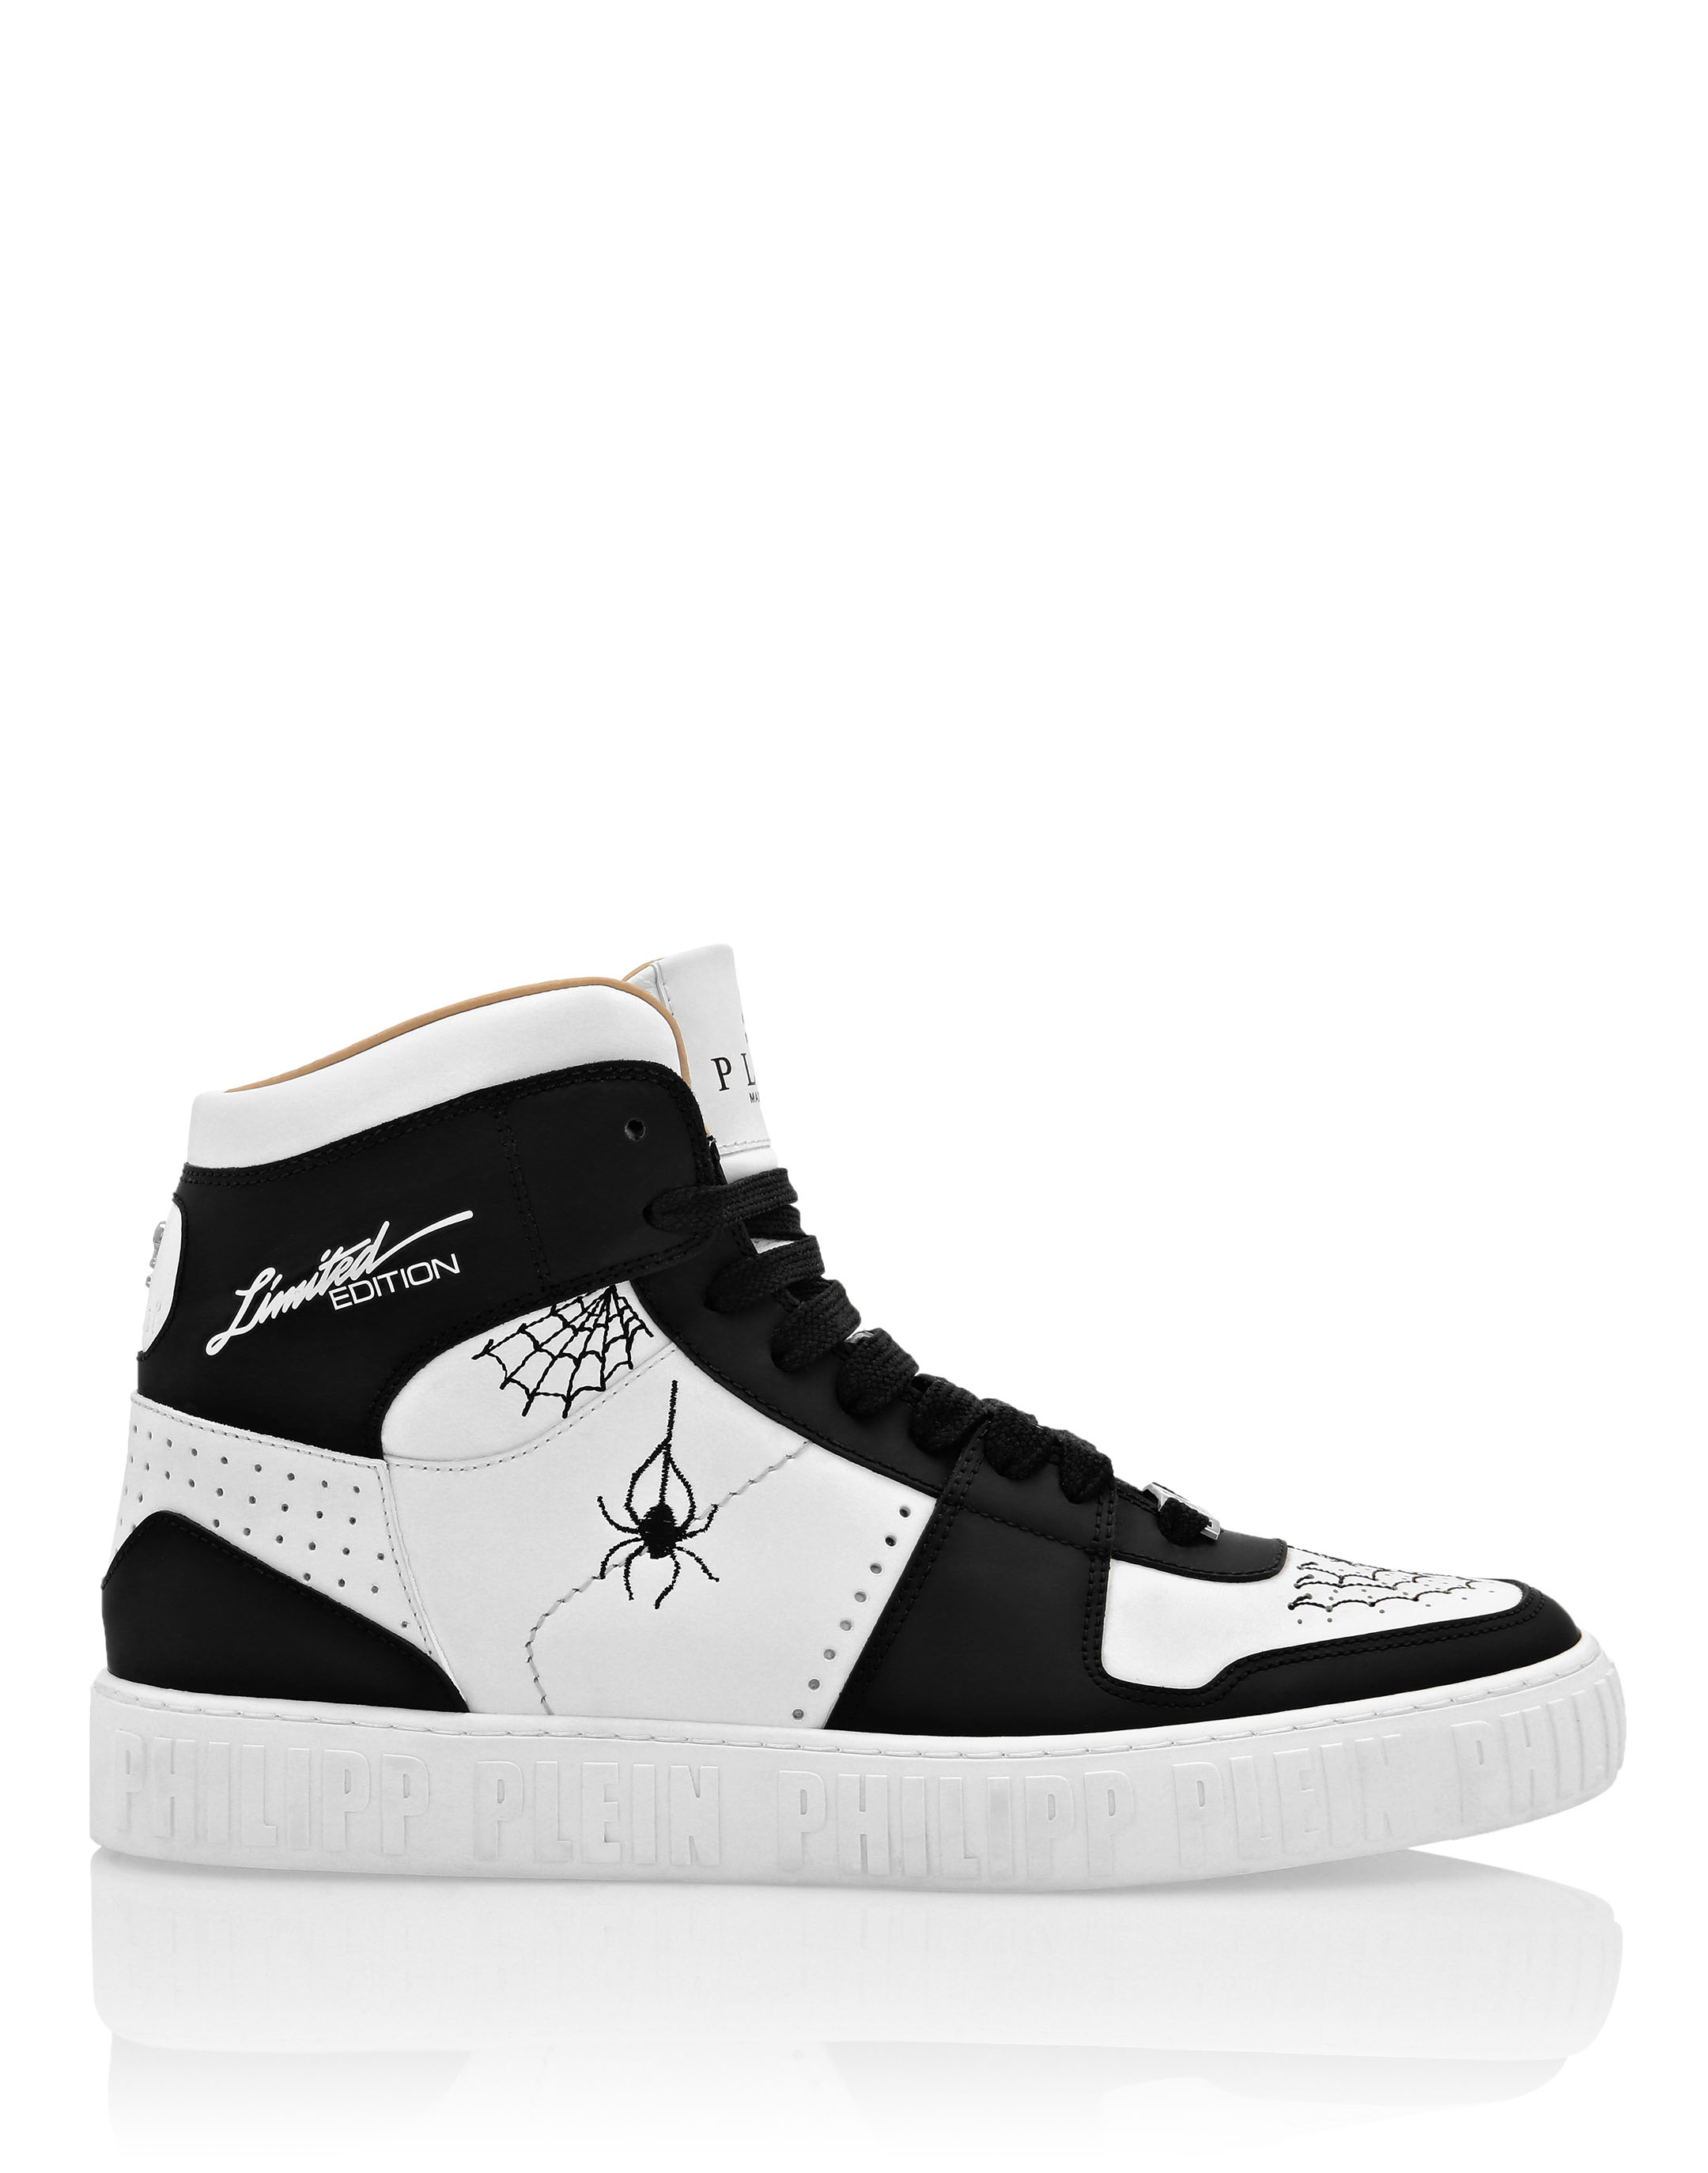  King Ma Men's Fashion Casual Shoe High Top Sport Sneaker Boot  | Fashion Sneakers